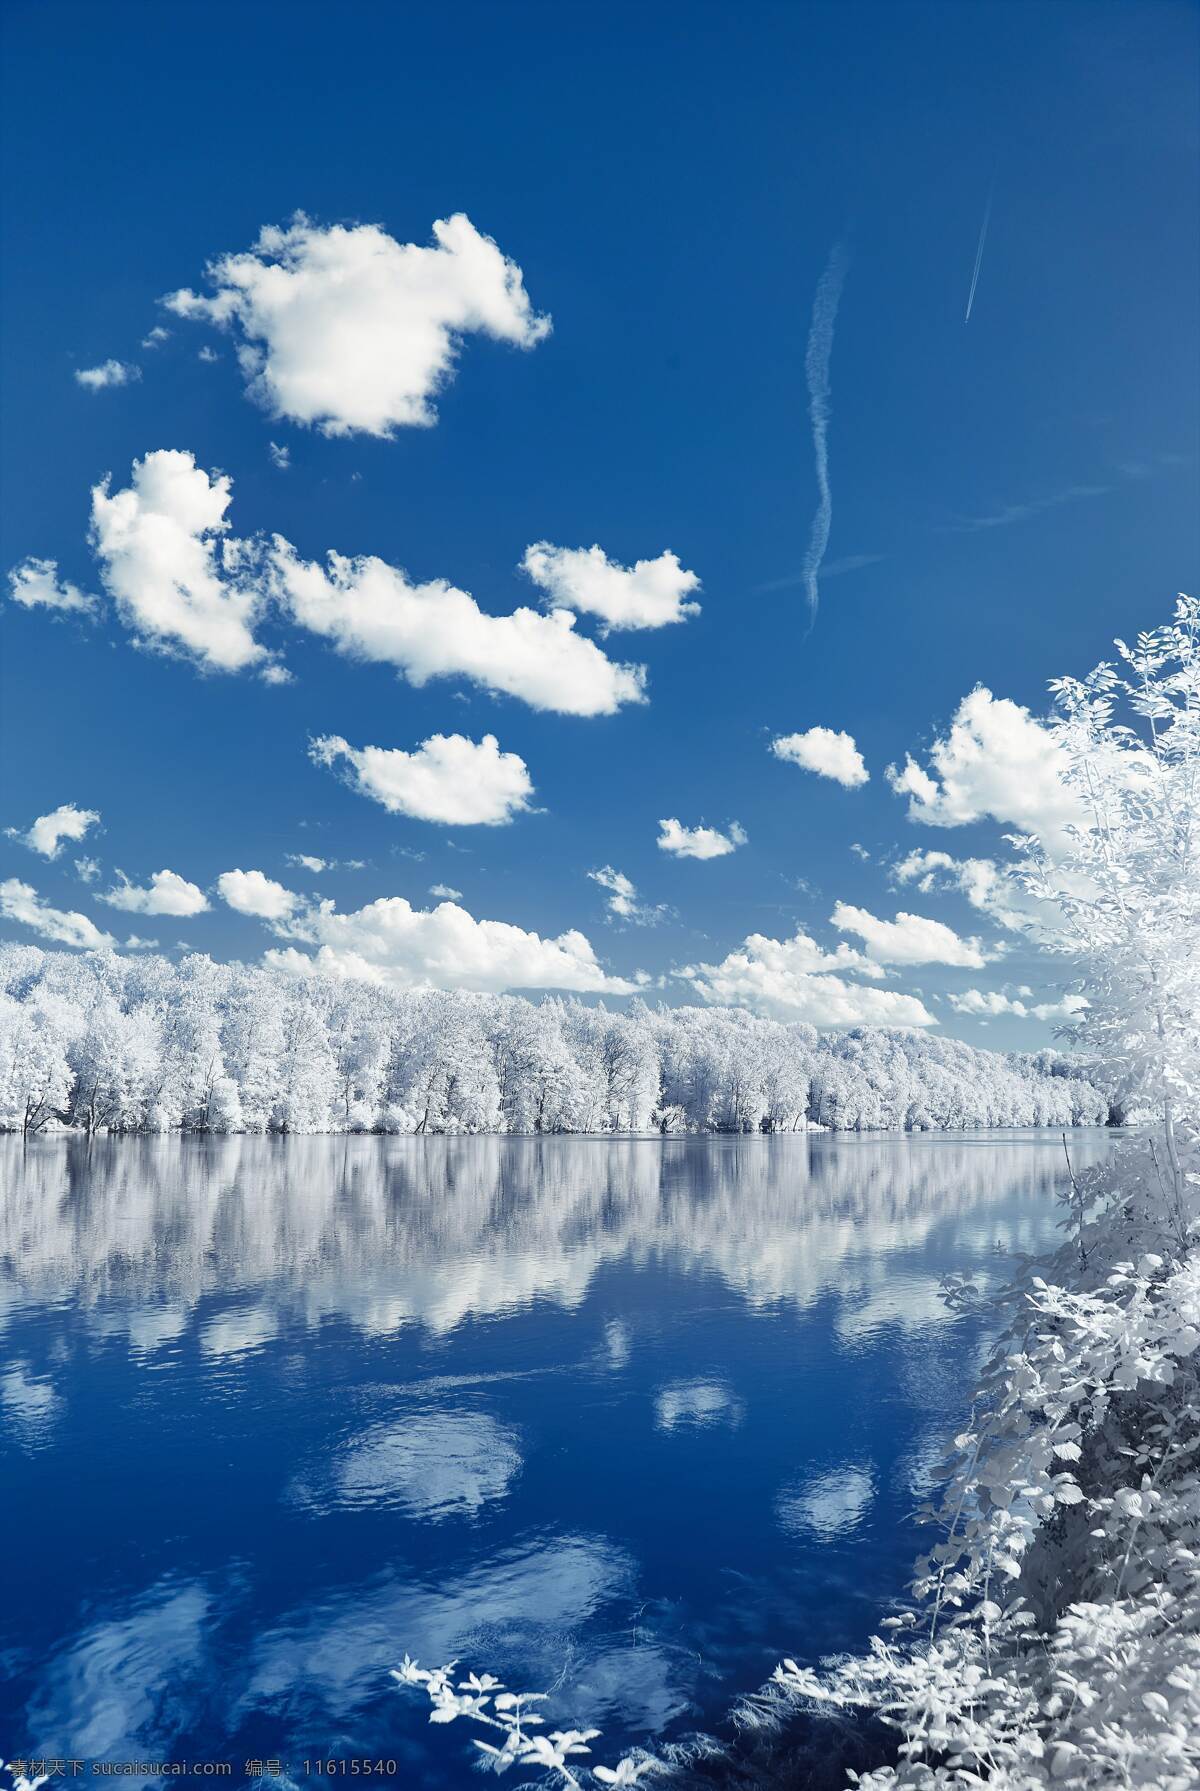 蓝天 白云 镜水 冰 树 云层 云朵 云彩 免费 高清 背景素材 背景 蓝色 森林 湖泊 湖水 镜面 晴天 阳光 美景 树木 雾凇 生活素材 自然景观 自然风景